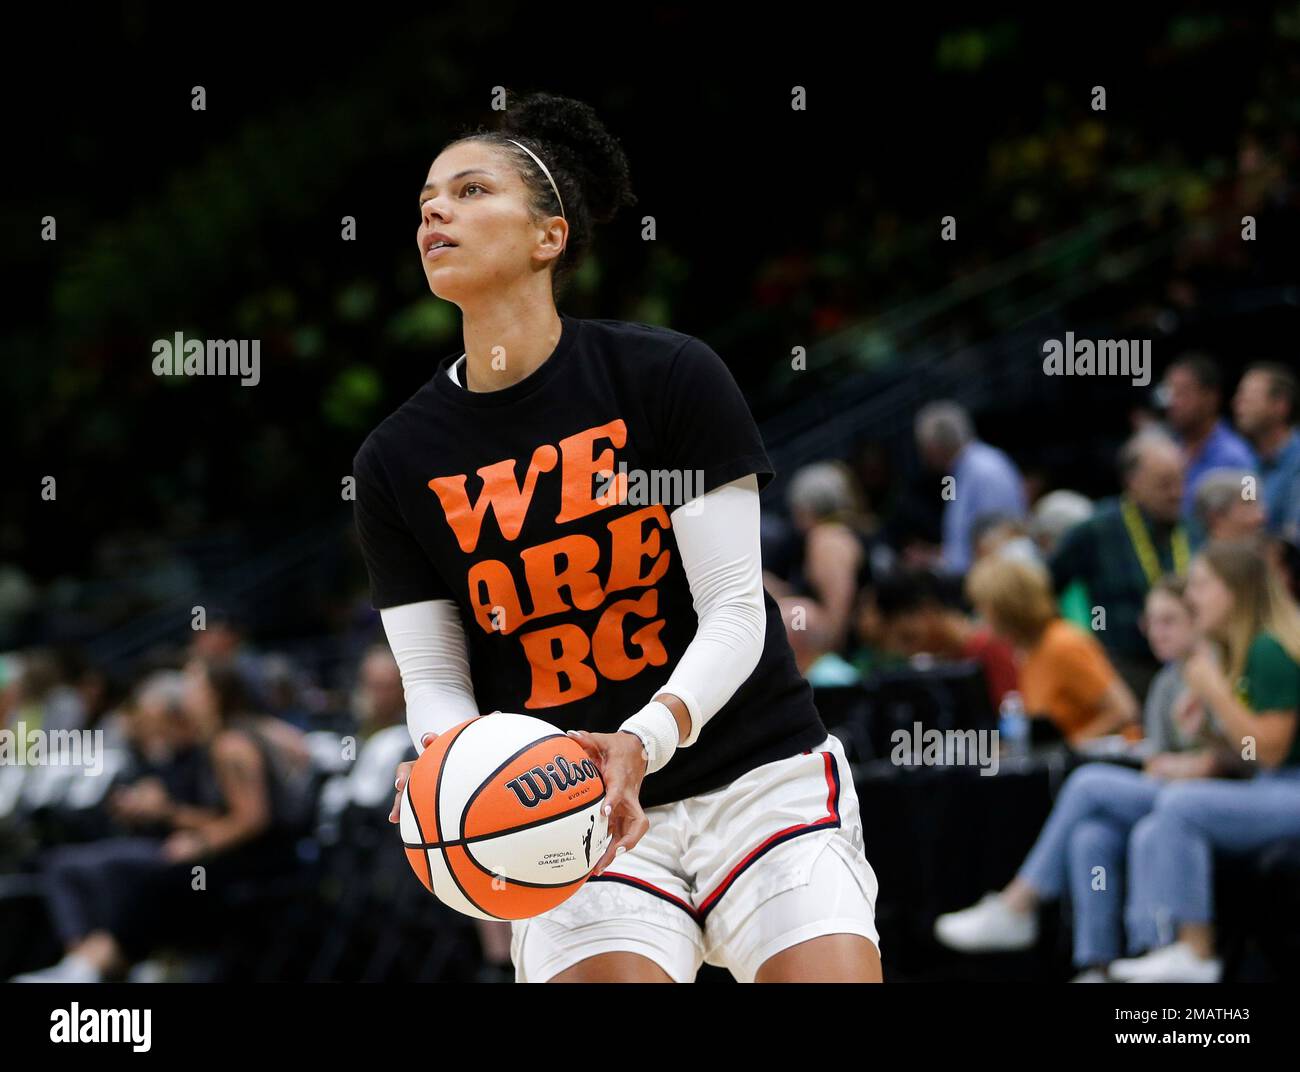 We are BG' shirts popular among WNBA, NBA stars